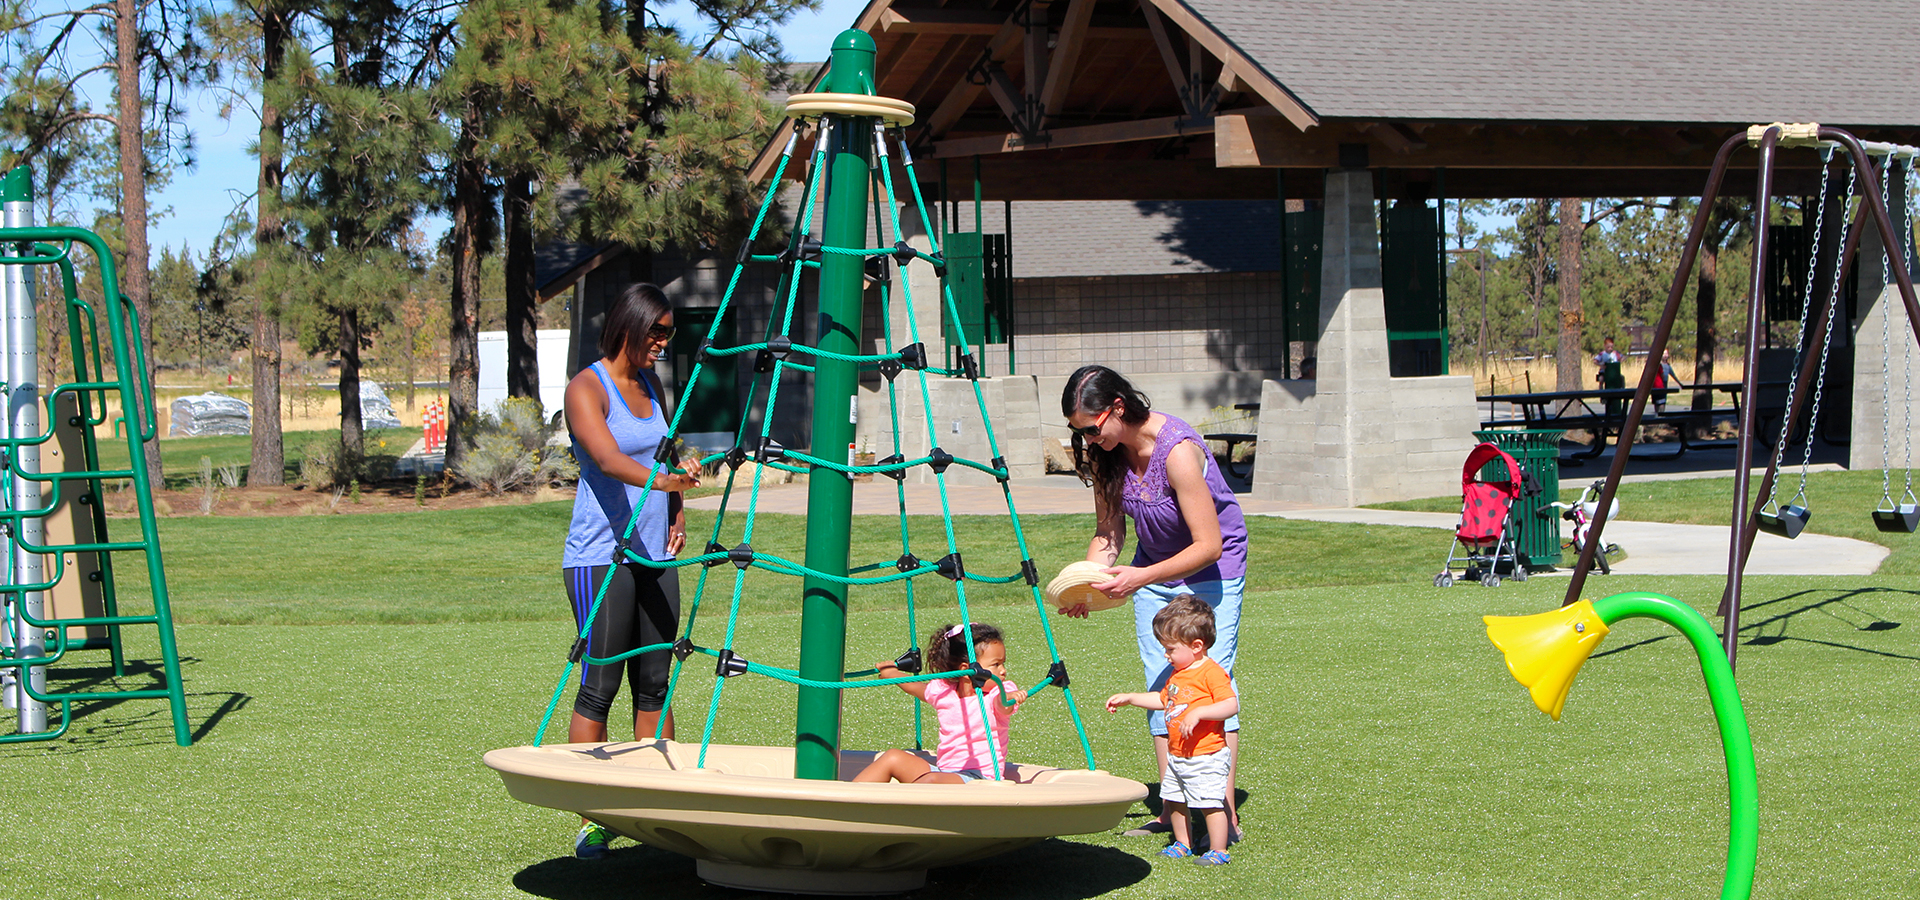 The playground at Pine Nursery.